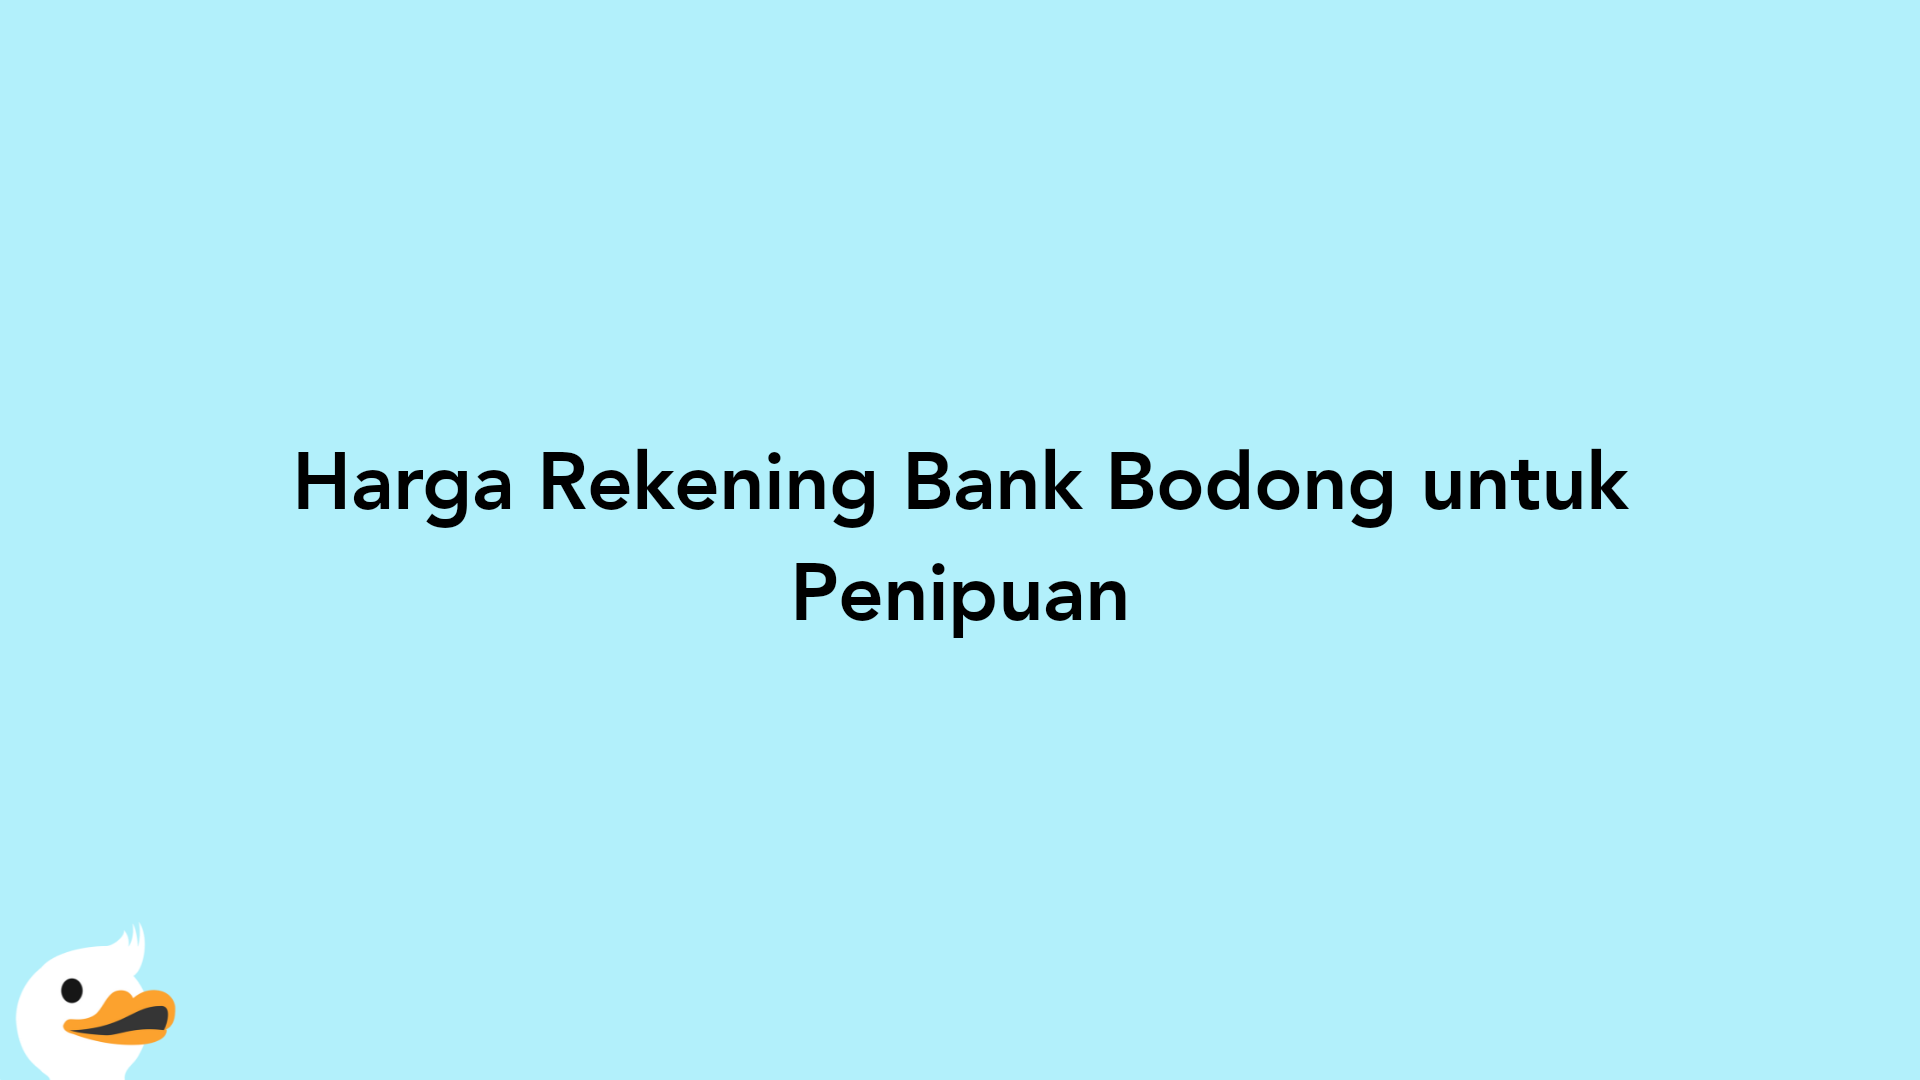 Harga Rekening Bank Bodong untuk Penipuan